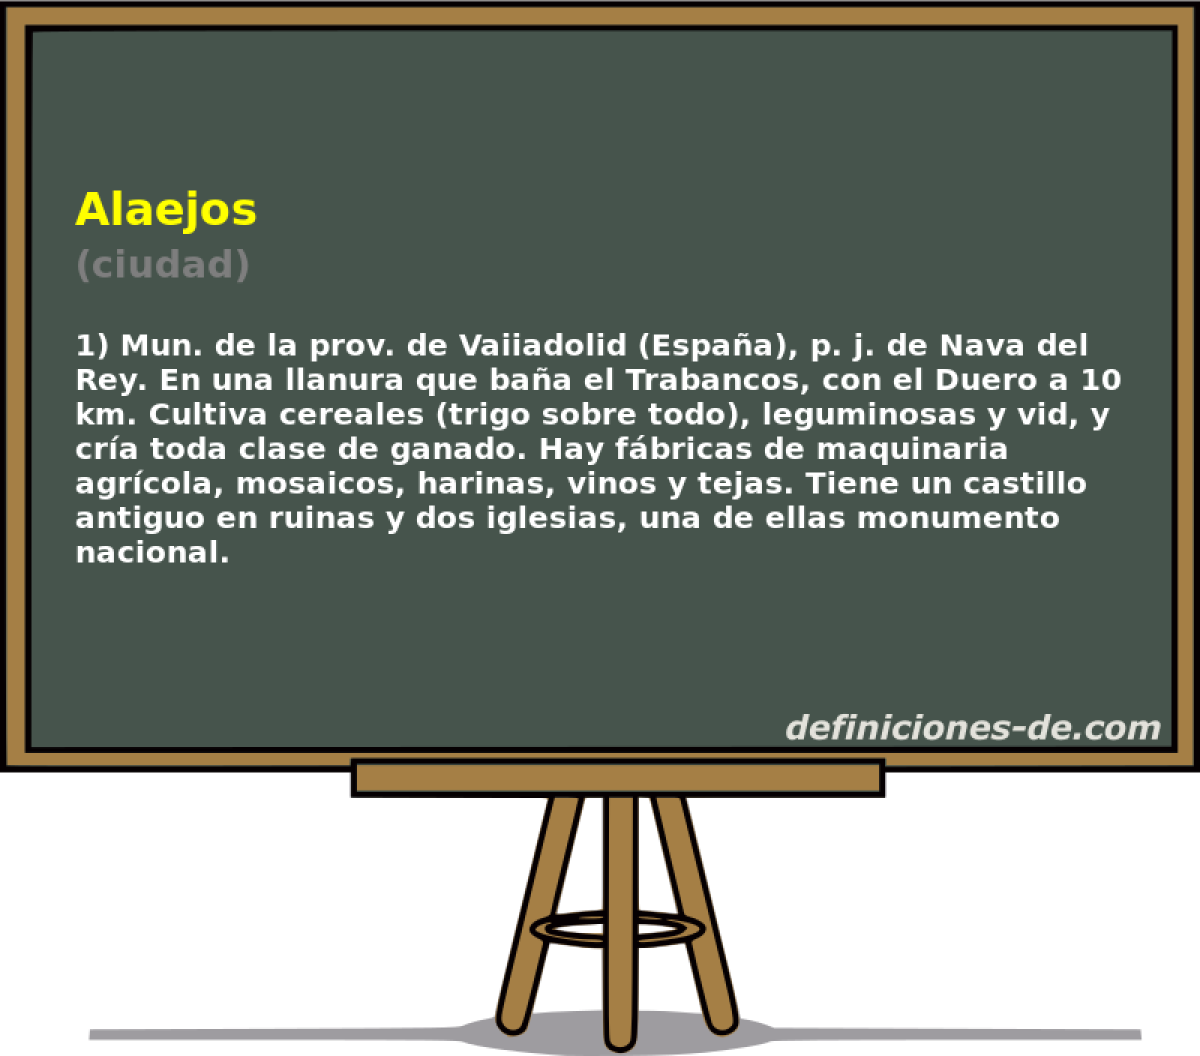 Alaejos (ciudad)